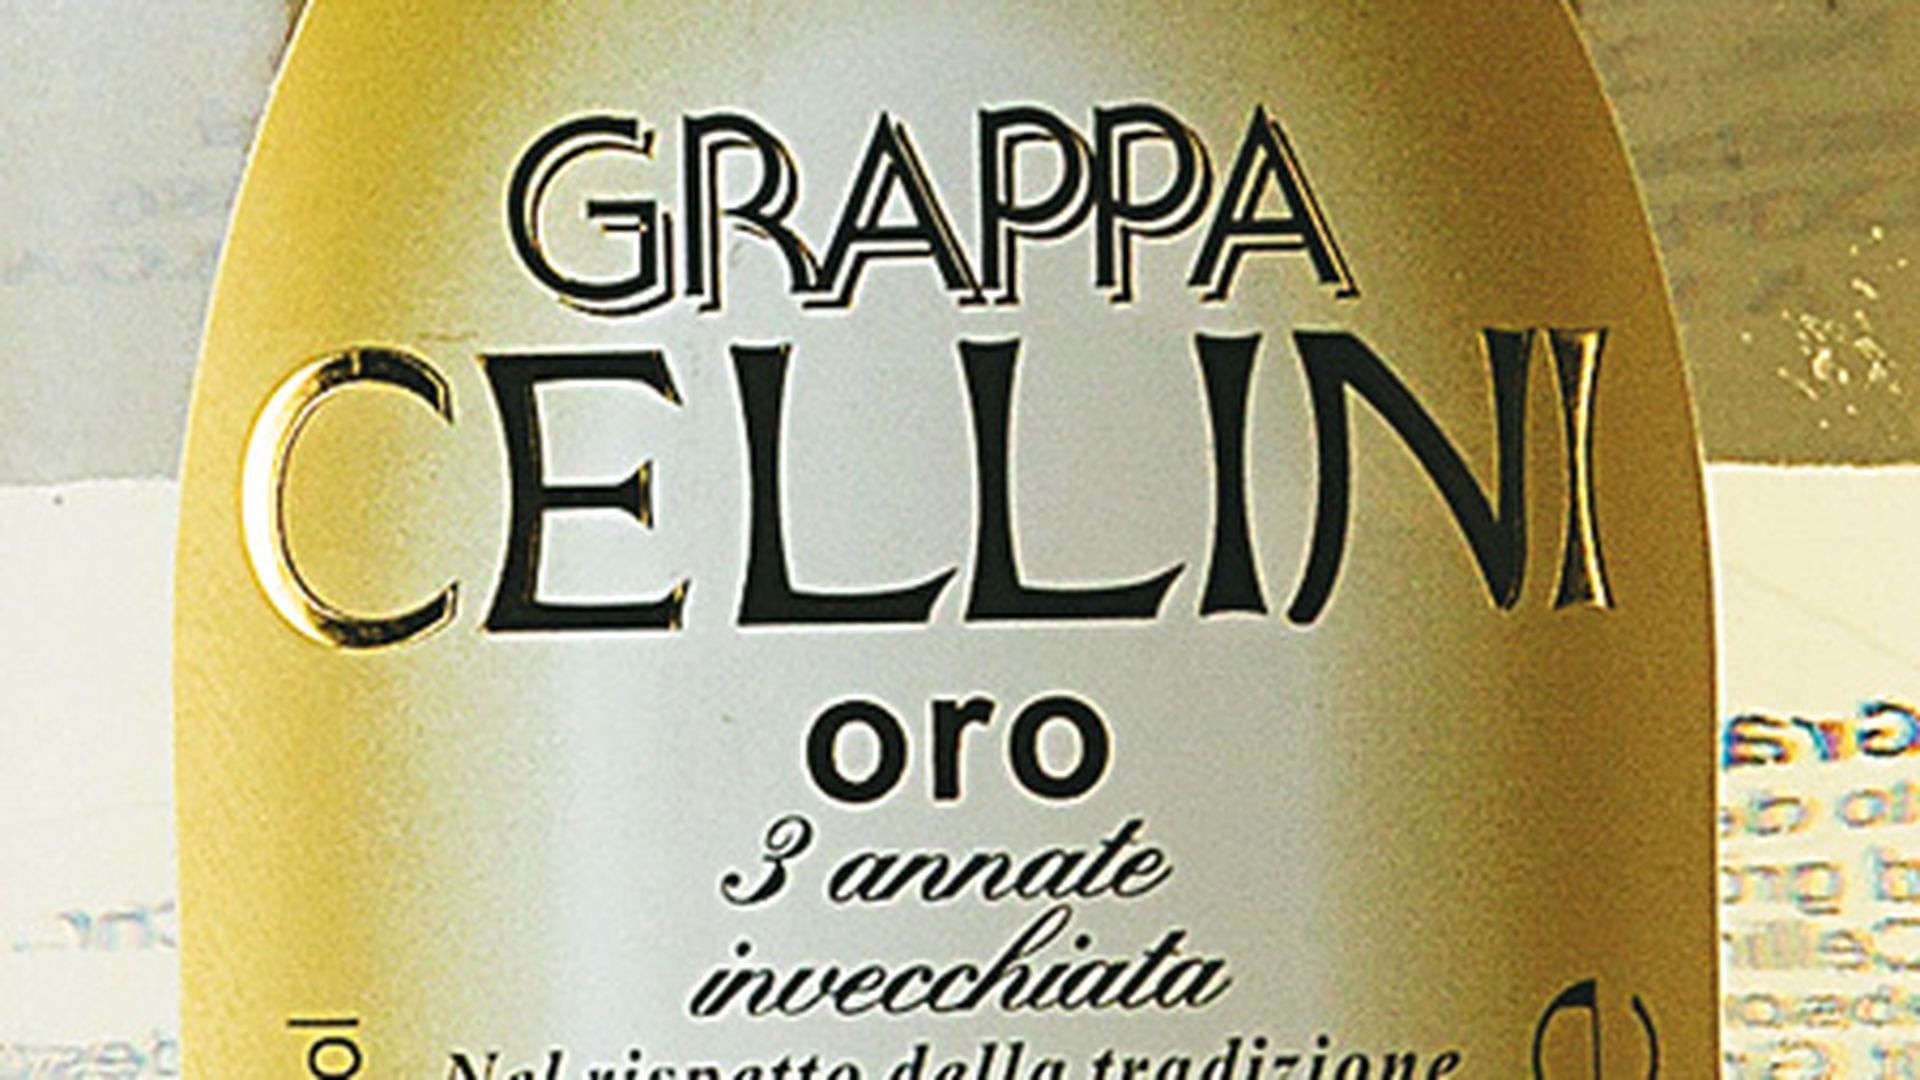 Grappa Cellini Oro